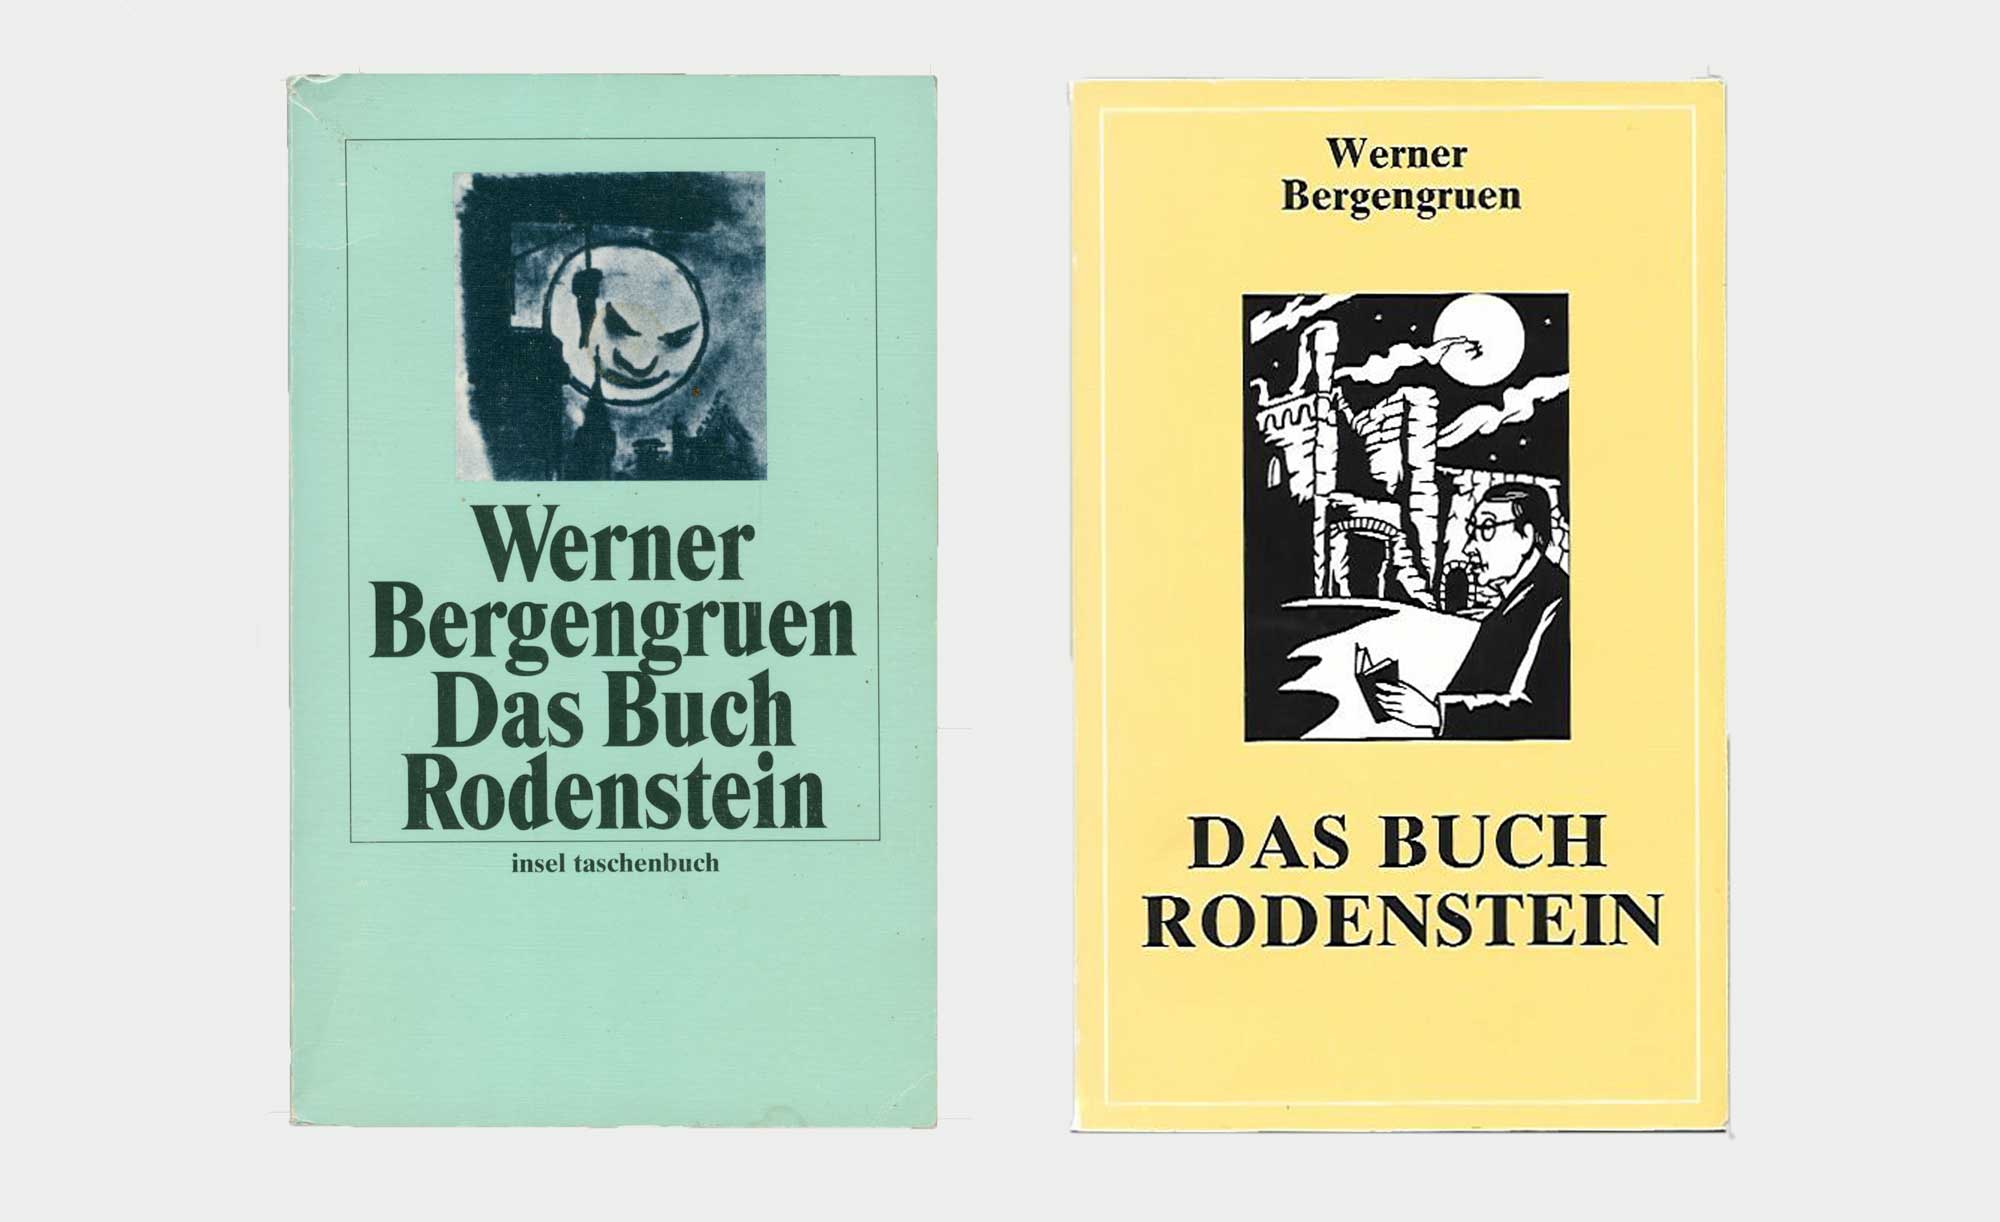 Das Buch Rodenstein